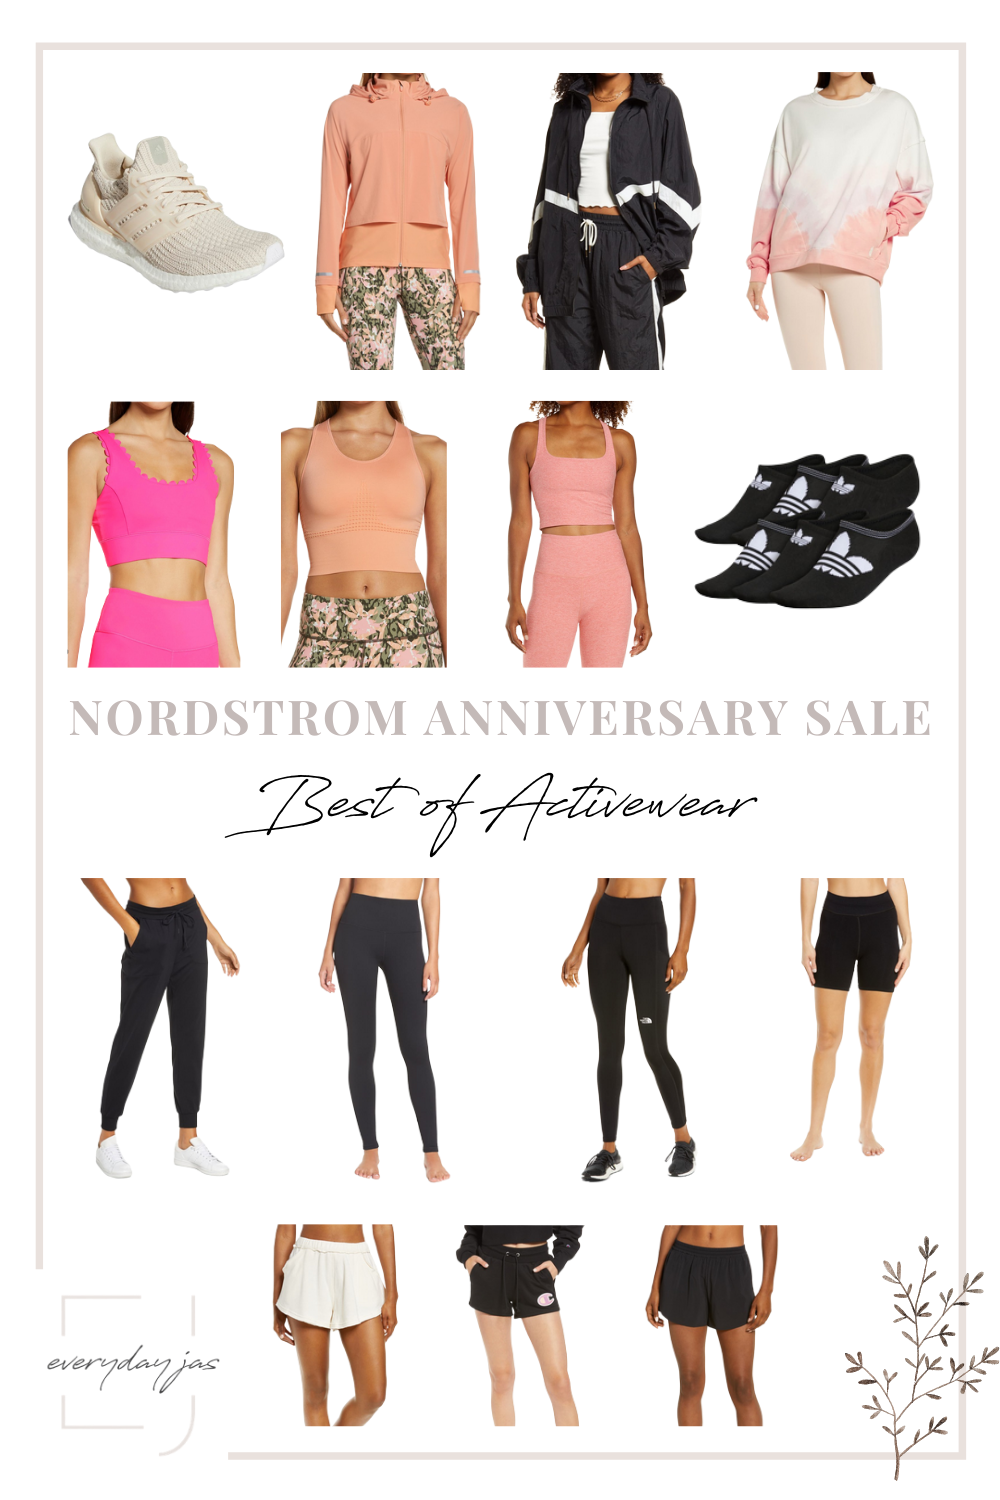 Women's Nordstrom Anniversary Sale best of activewear